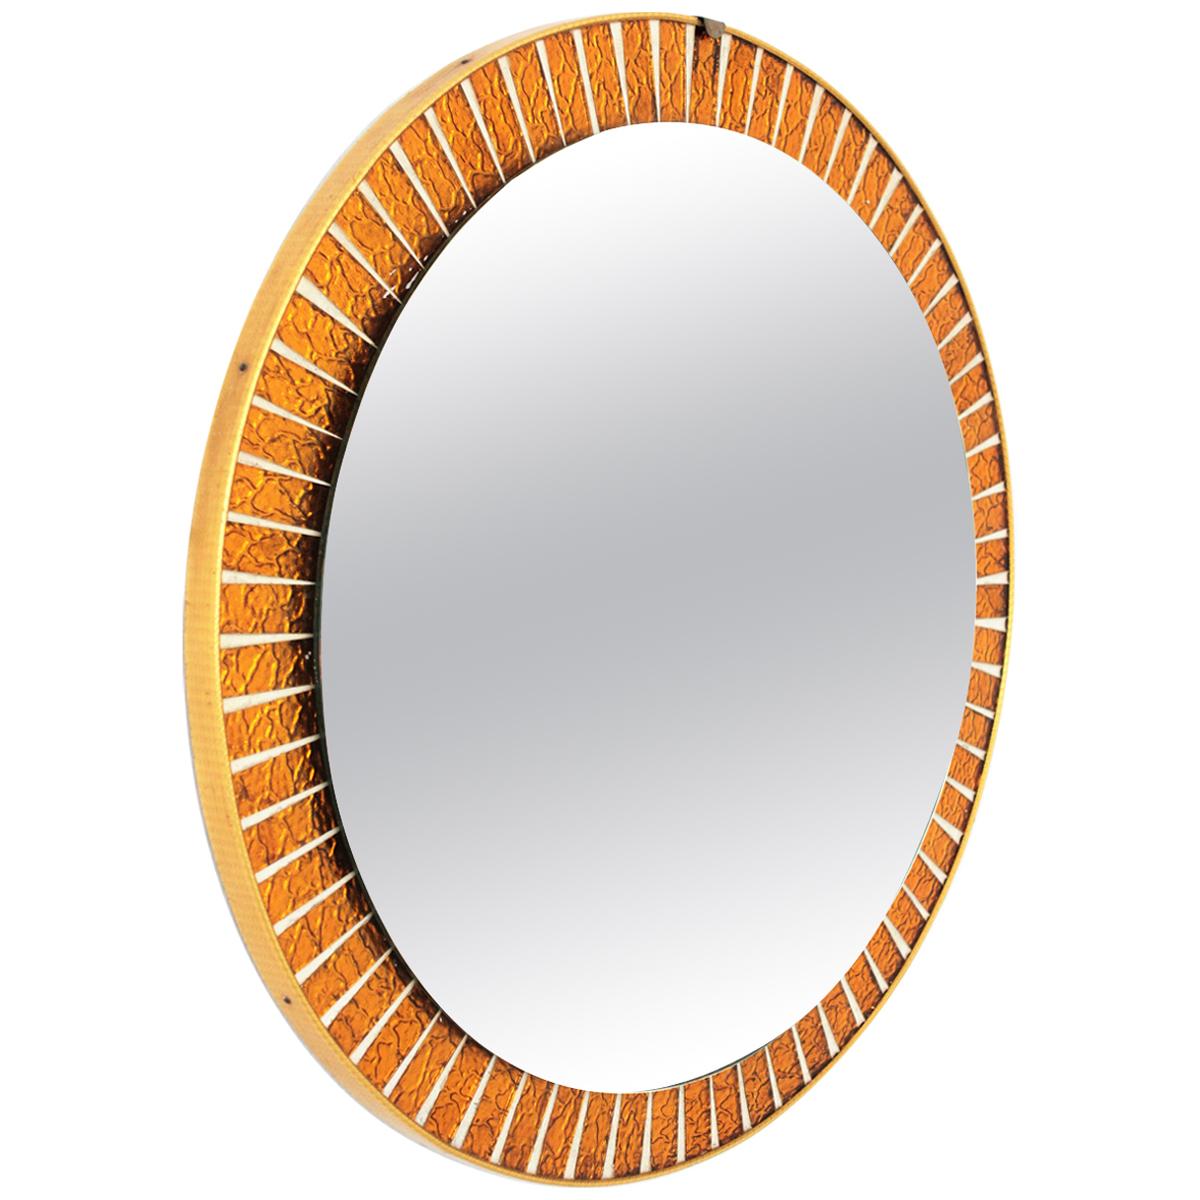 Midcentury Round Sunburst Mirror with Orange Glass Mosaic Frame For Sale 3